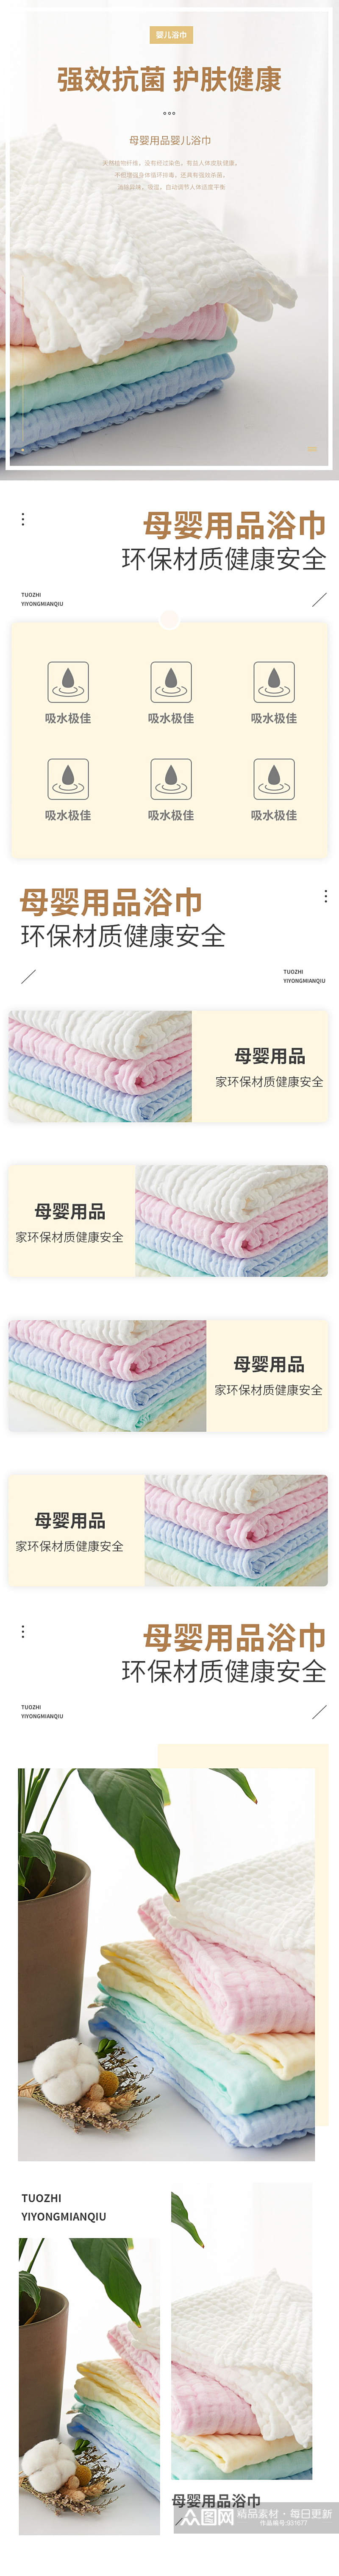 婴儿浴巾母婴产品详情页模板素材